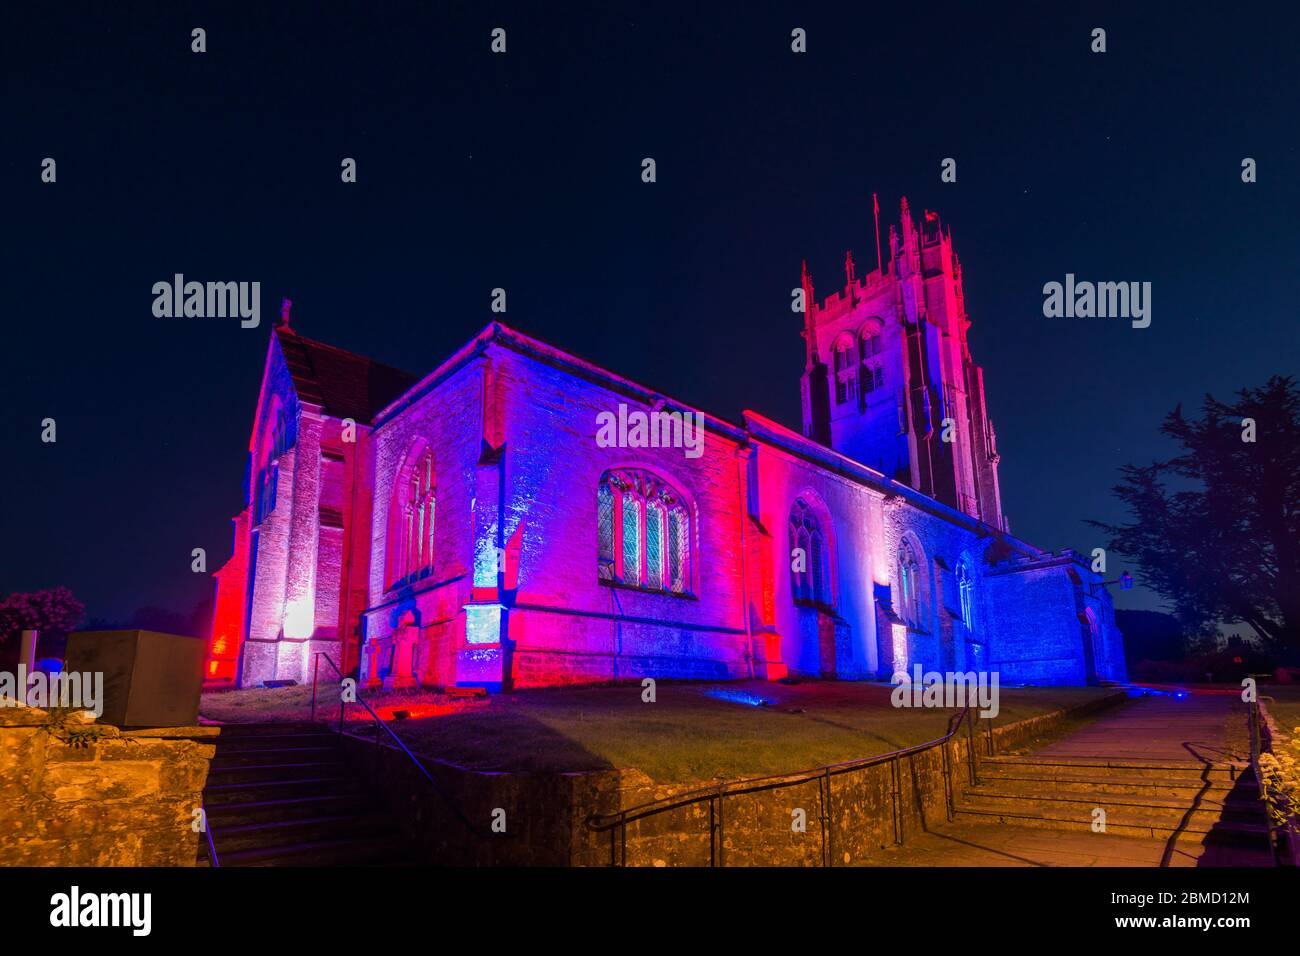 Beaminster, Dorset, Großbritannien. Mai 2020. Die St. Mary's Church in Beaminster in Dorset ist zum 75. Jahrestag des VE Day rot, weiß und blau beleuchtet. Bild: Graham Hunt/Alamy Live News Stockfoto